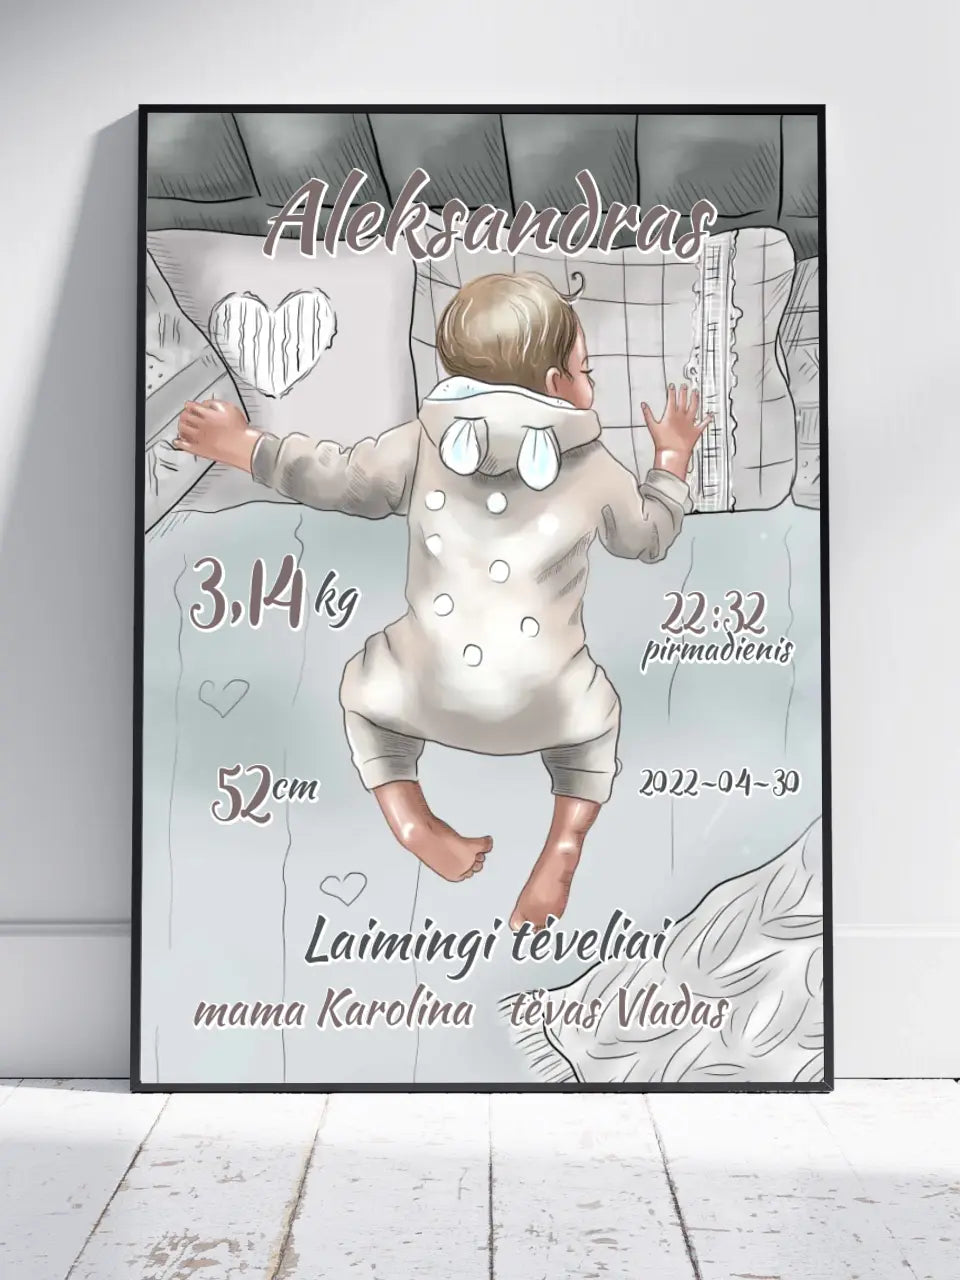 Personalizuota Vaiko Gimimo Metrikų Iliustracija, Mergaitės ir Berniuko gimimo metrika, plakatas su rėmeliu